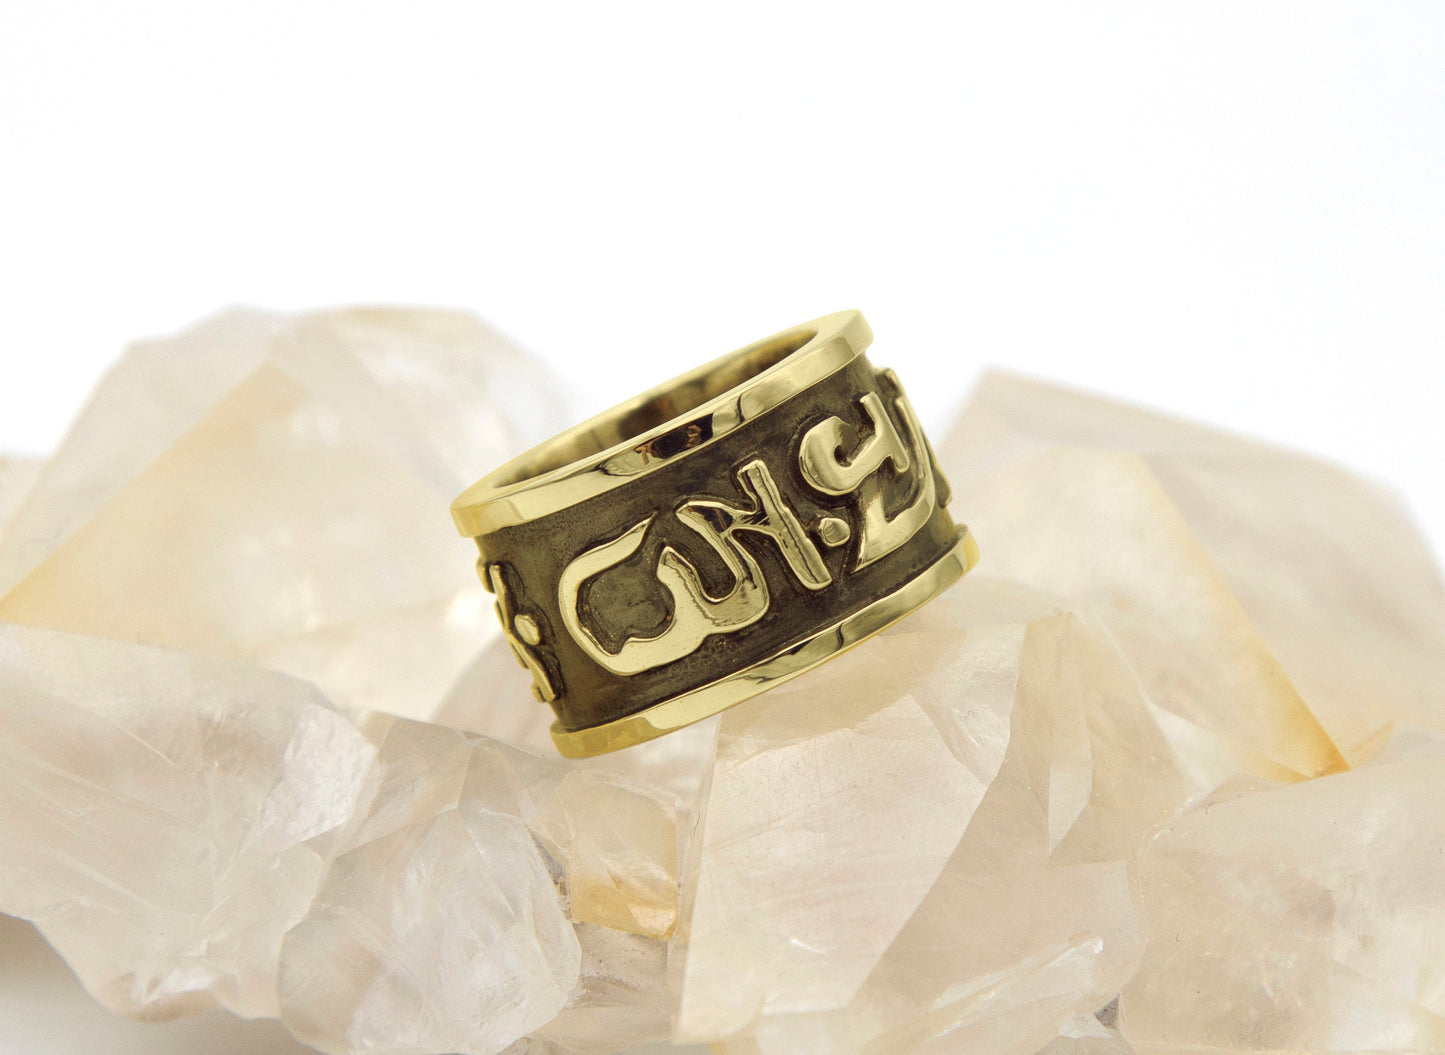 Tibetan Mantra Gold Ring - Size 8